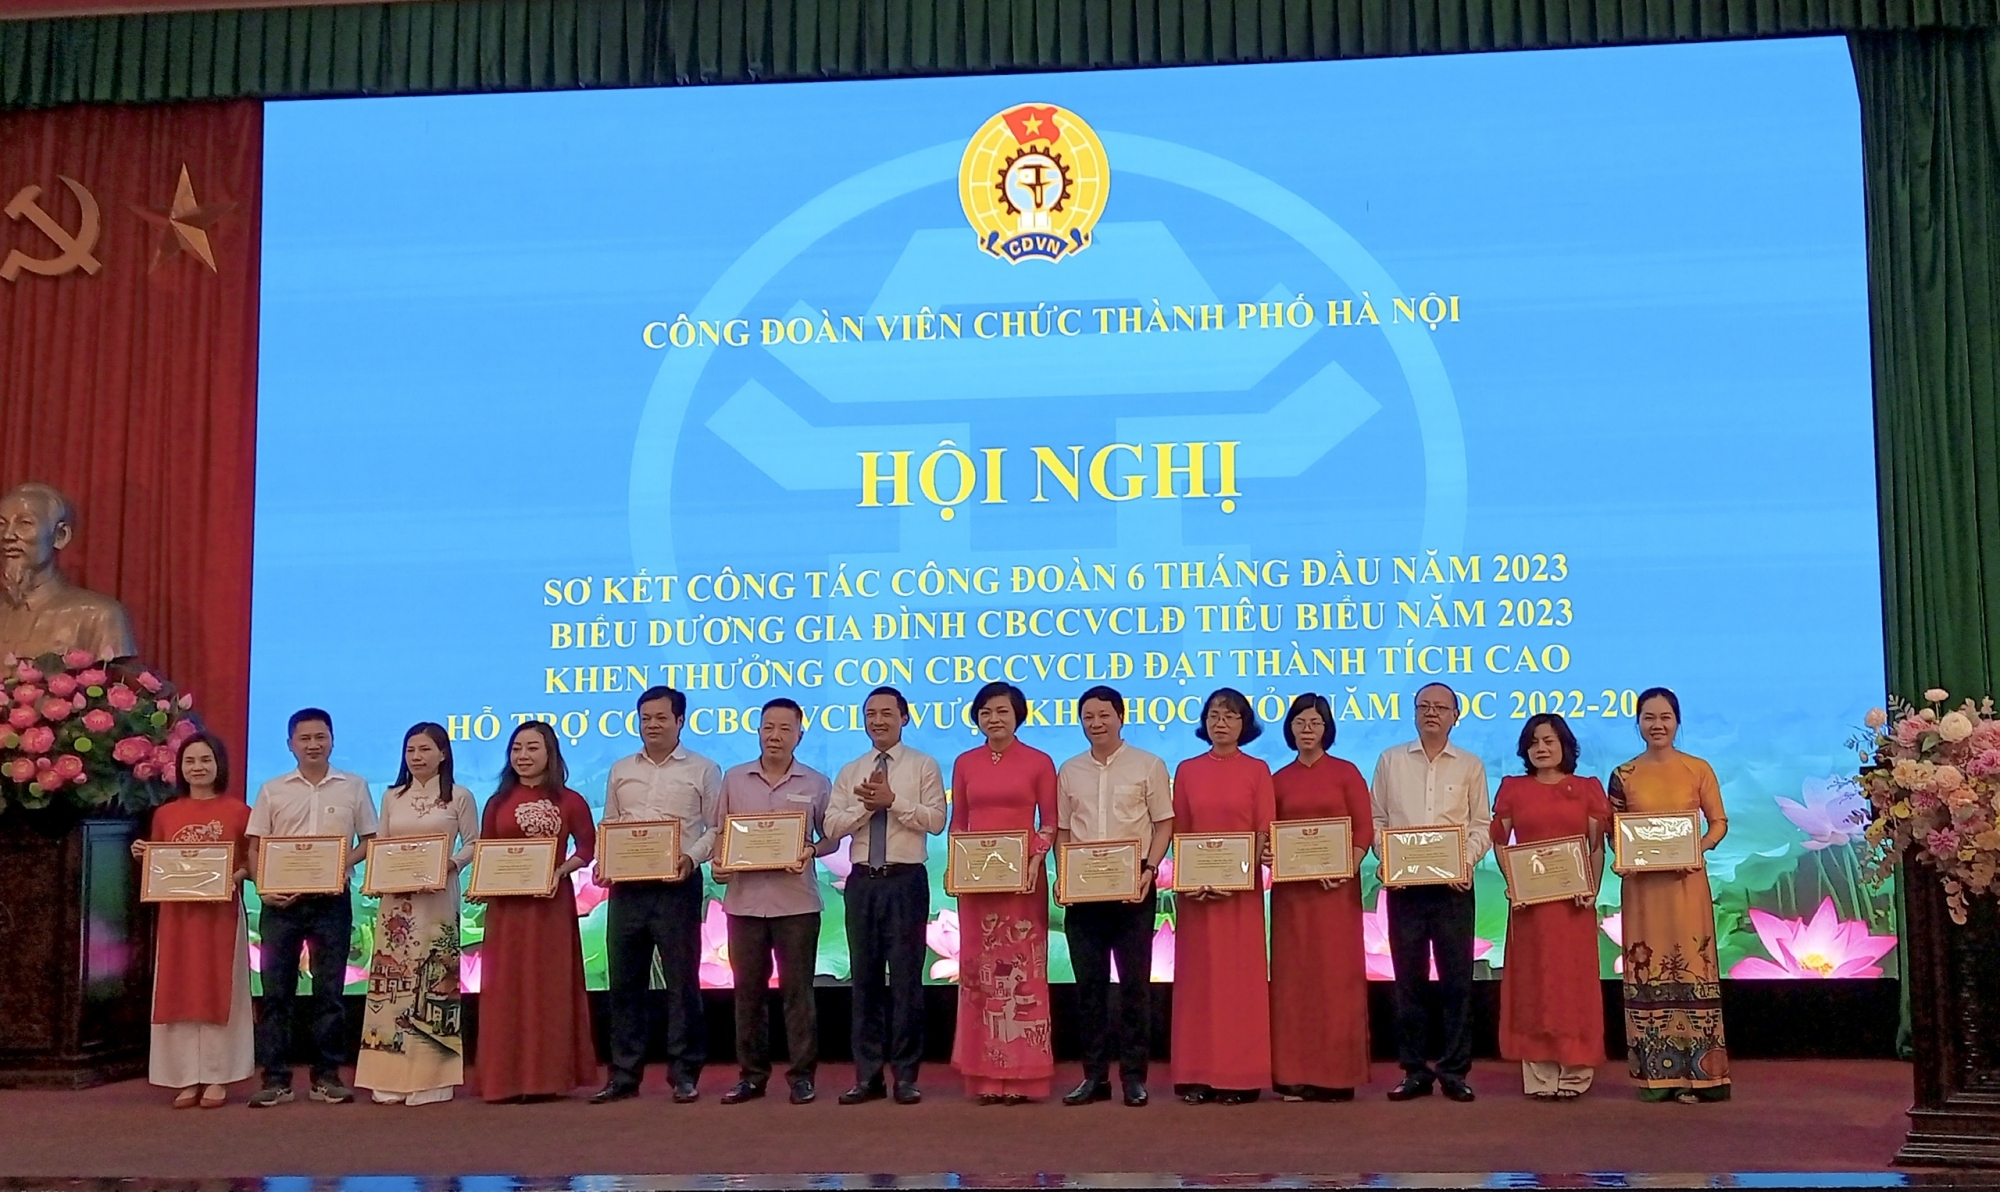 Công đoàn Viên chức Thành phố Hà Nội đã tổ chức Hội nghị sơ kết công tác công đoàn 6 tháng đầu năm 2023